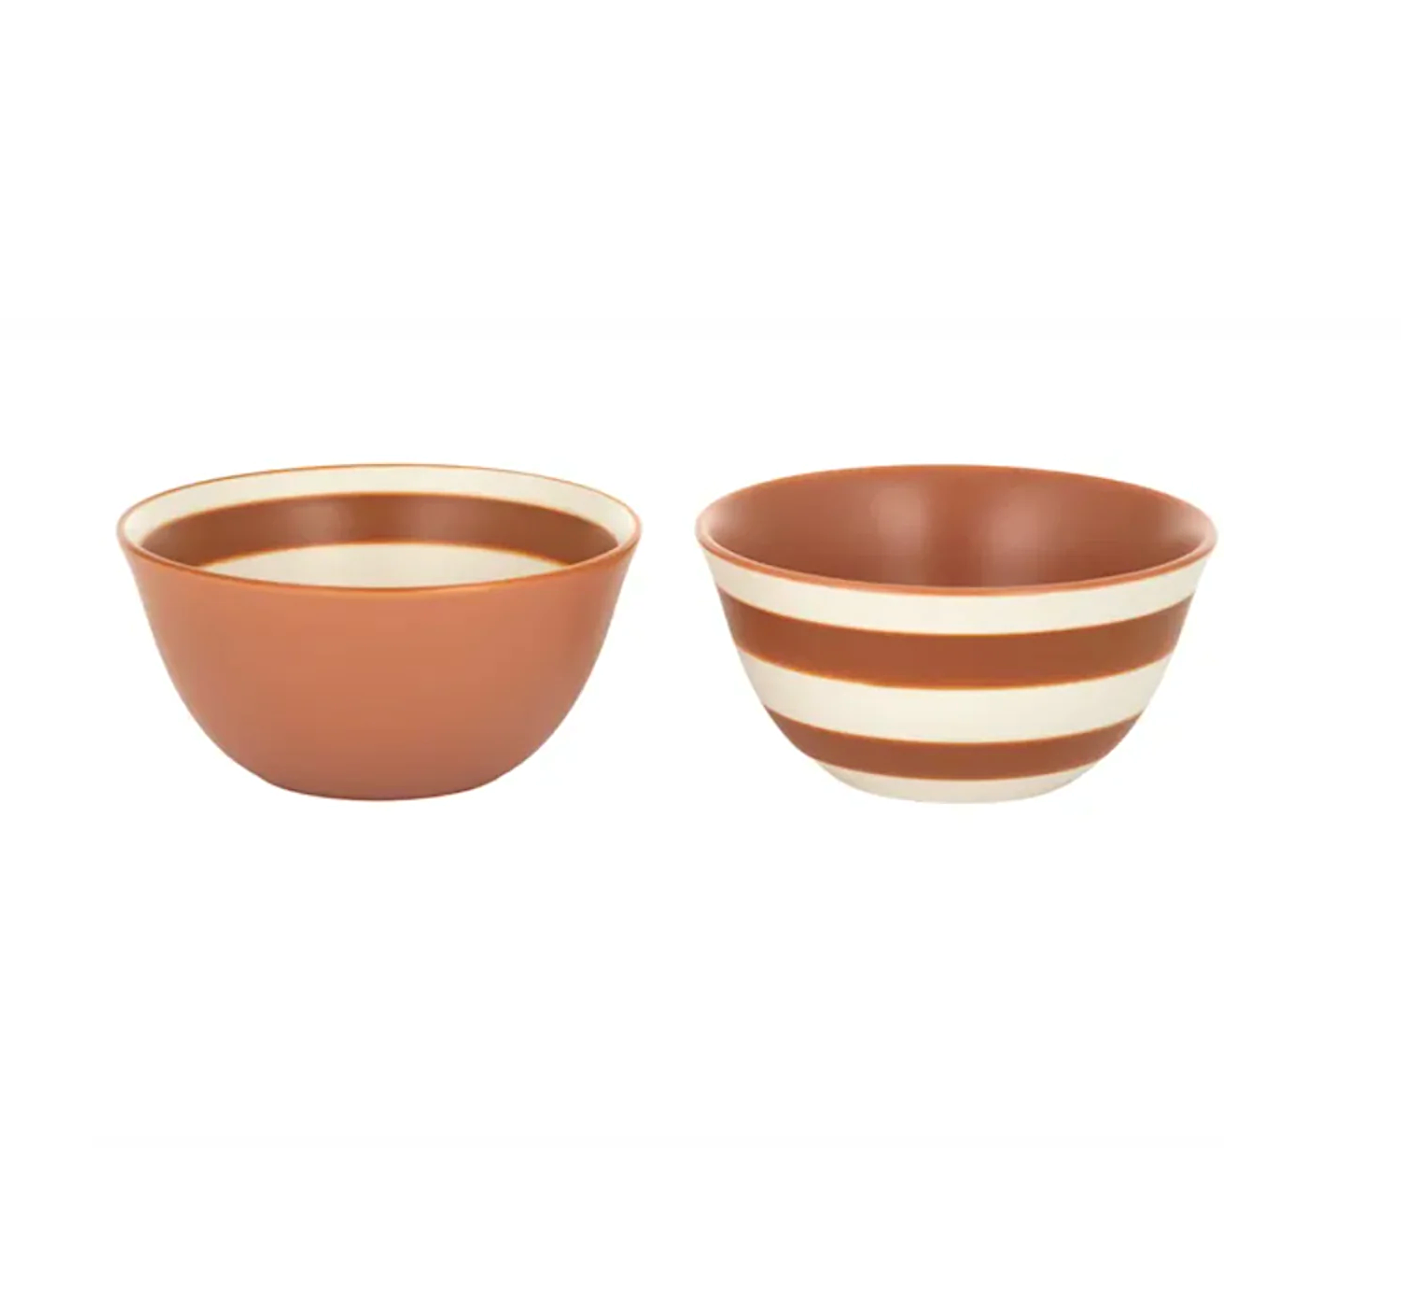 Calypso Small Bowls